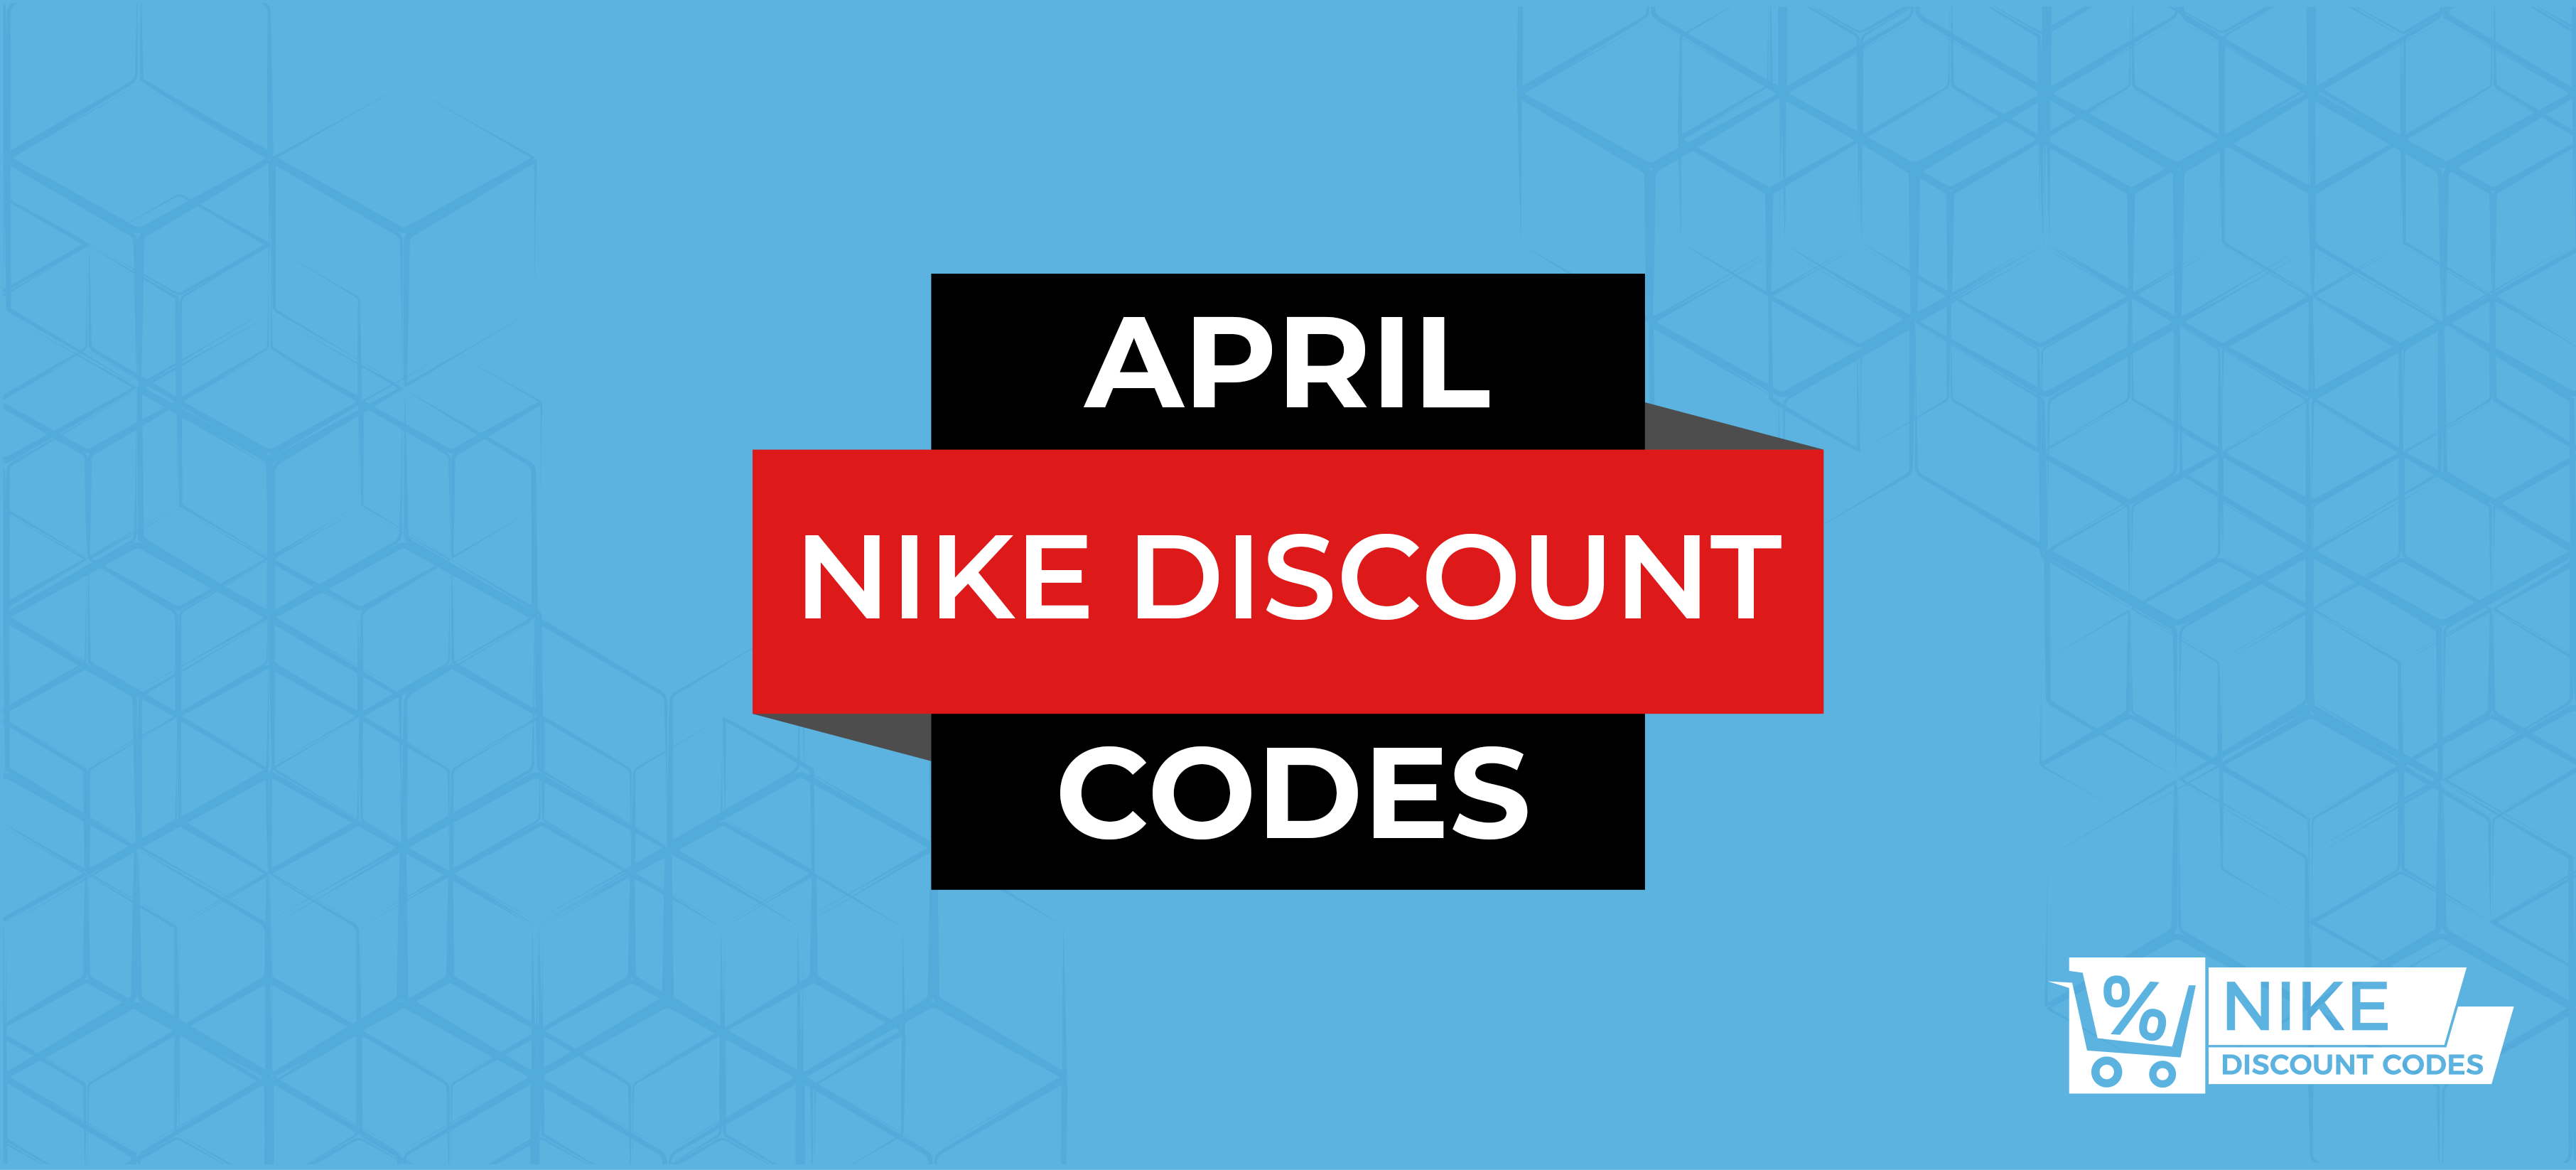 nike 1 discount code